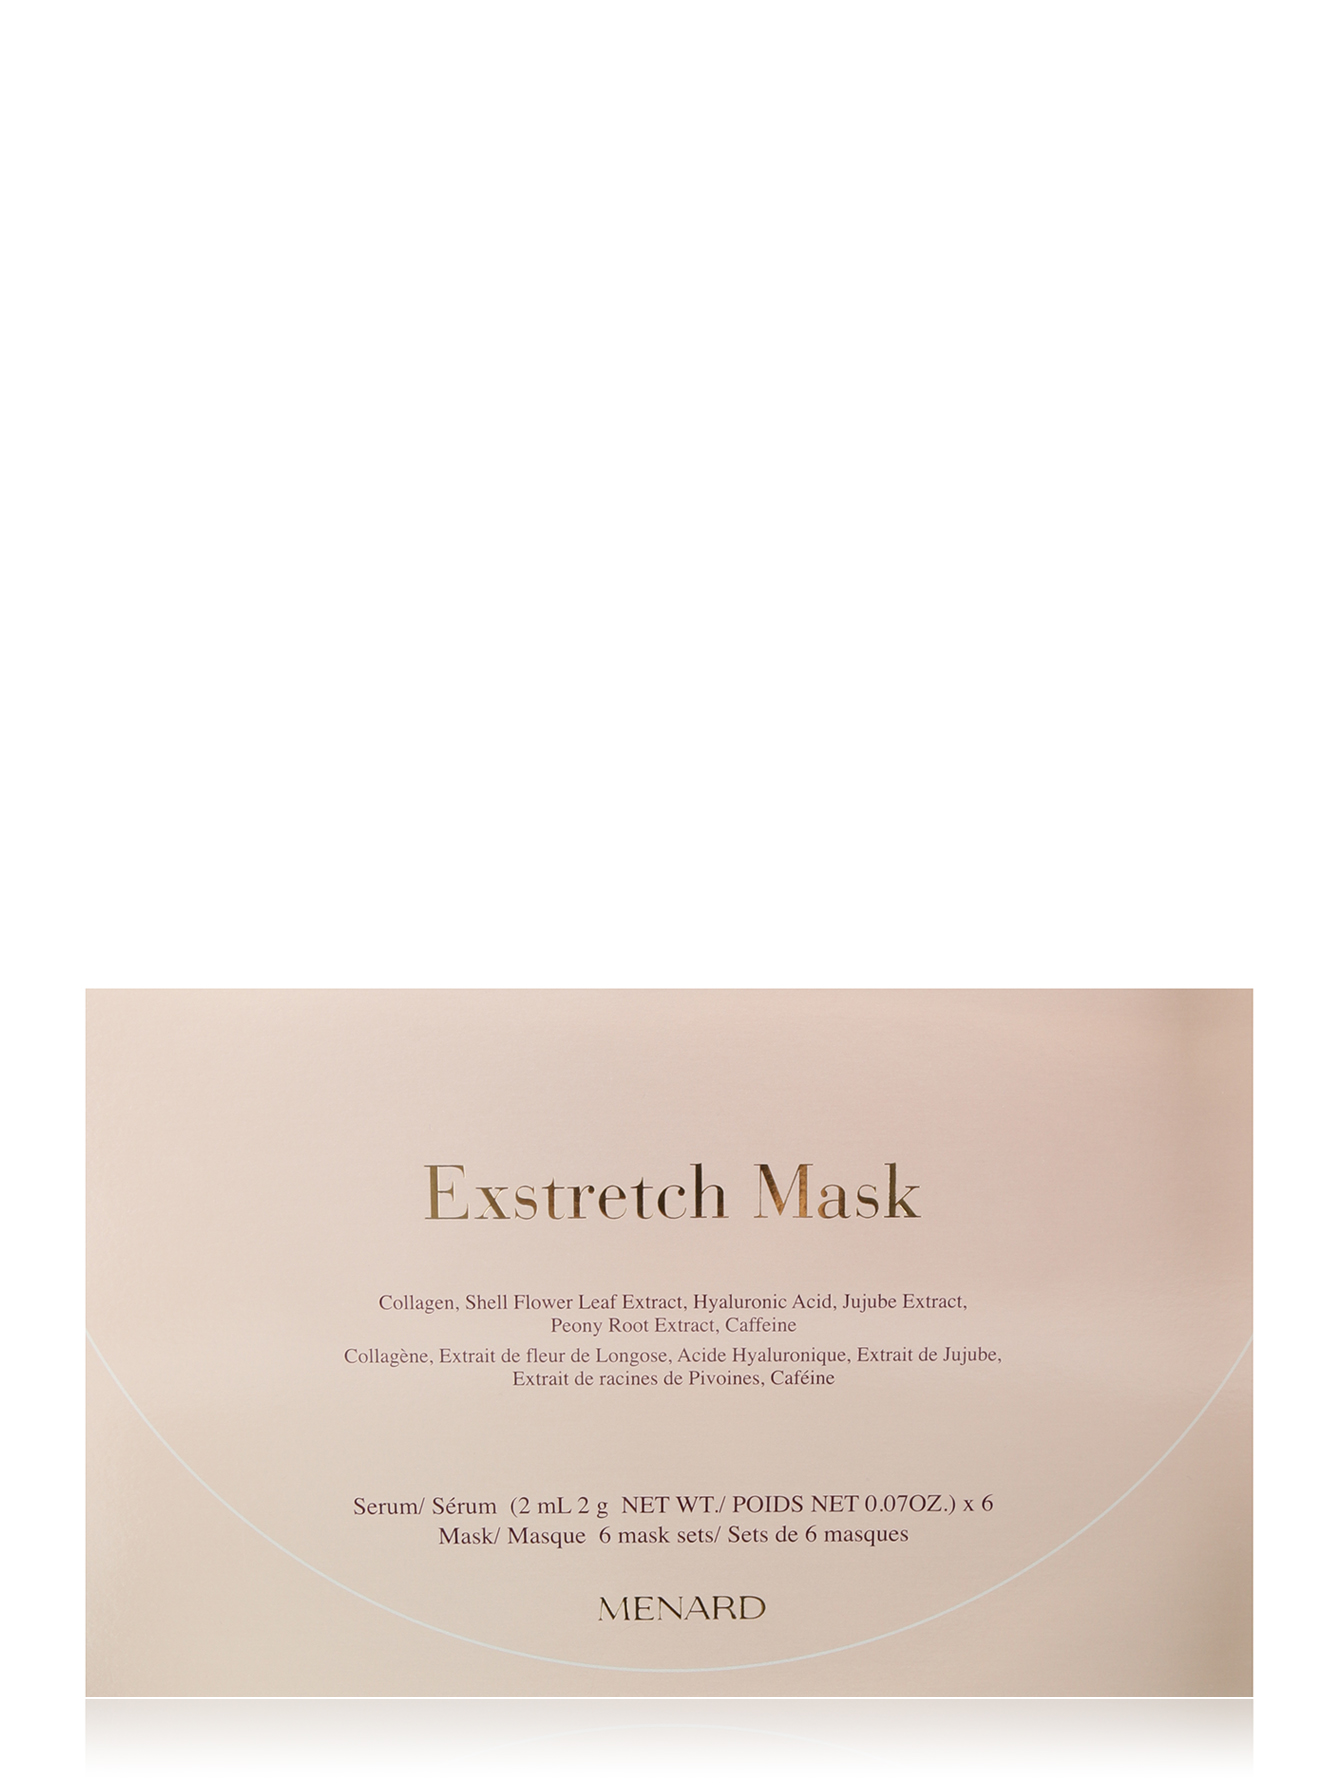 Омолаживающая маска 6 уп Exstretch - Общий вид